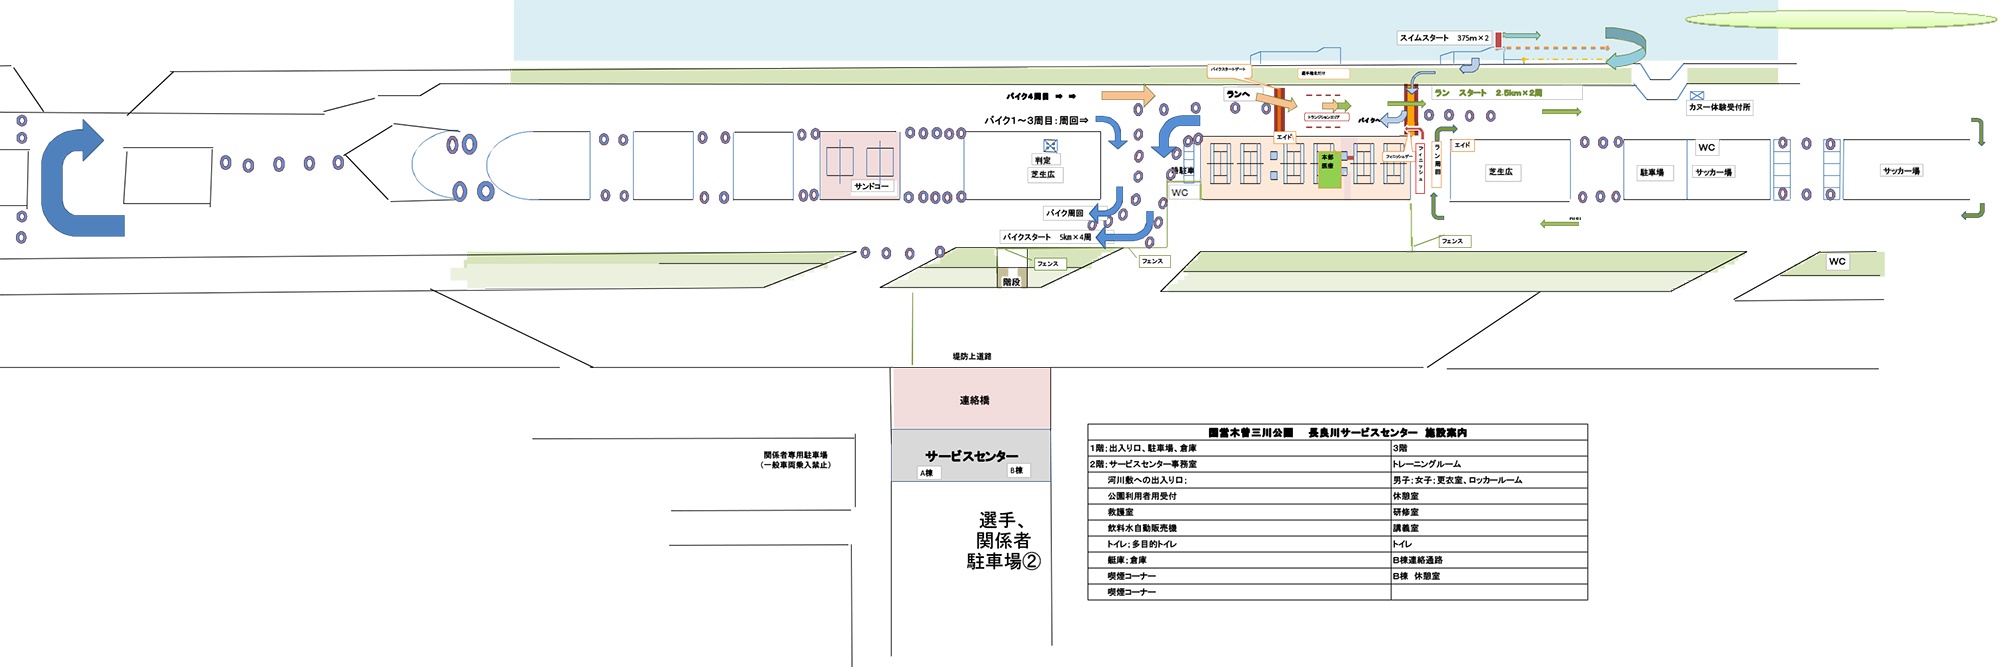 2016長良川パラトライアスロン会場図・コース図